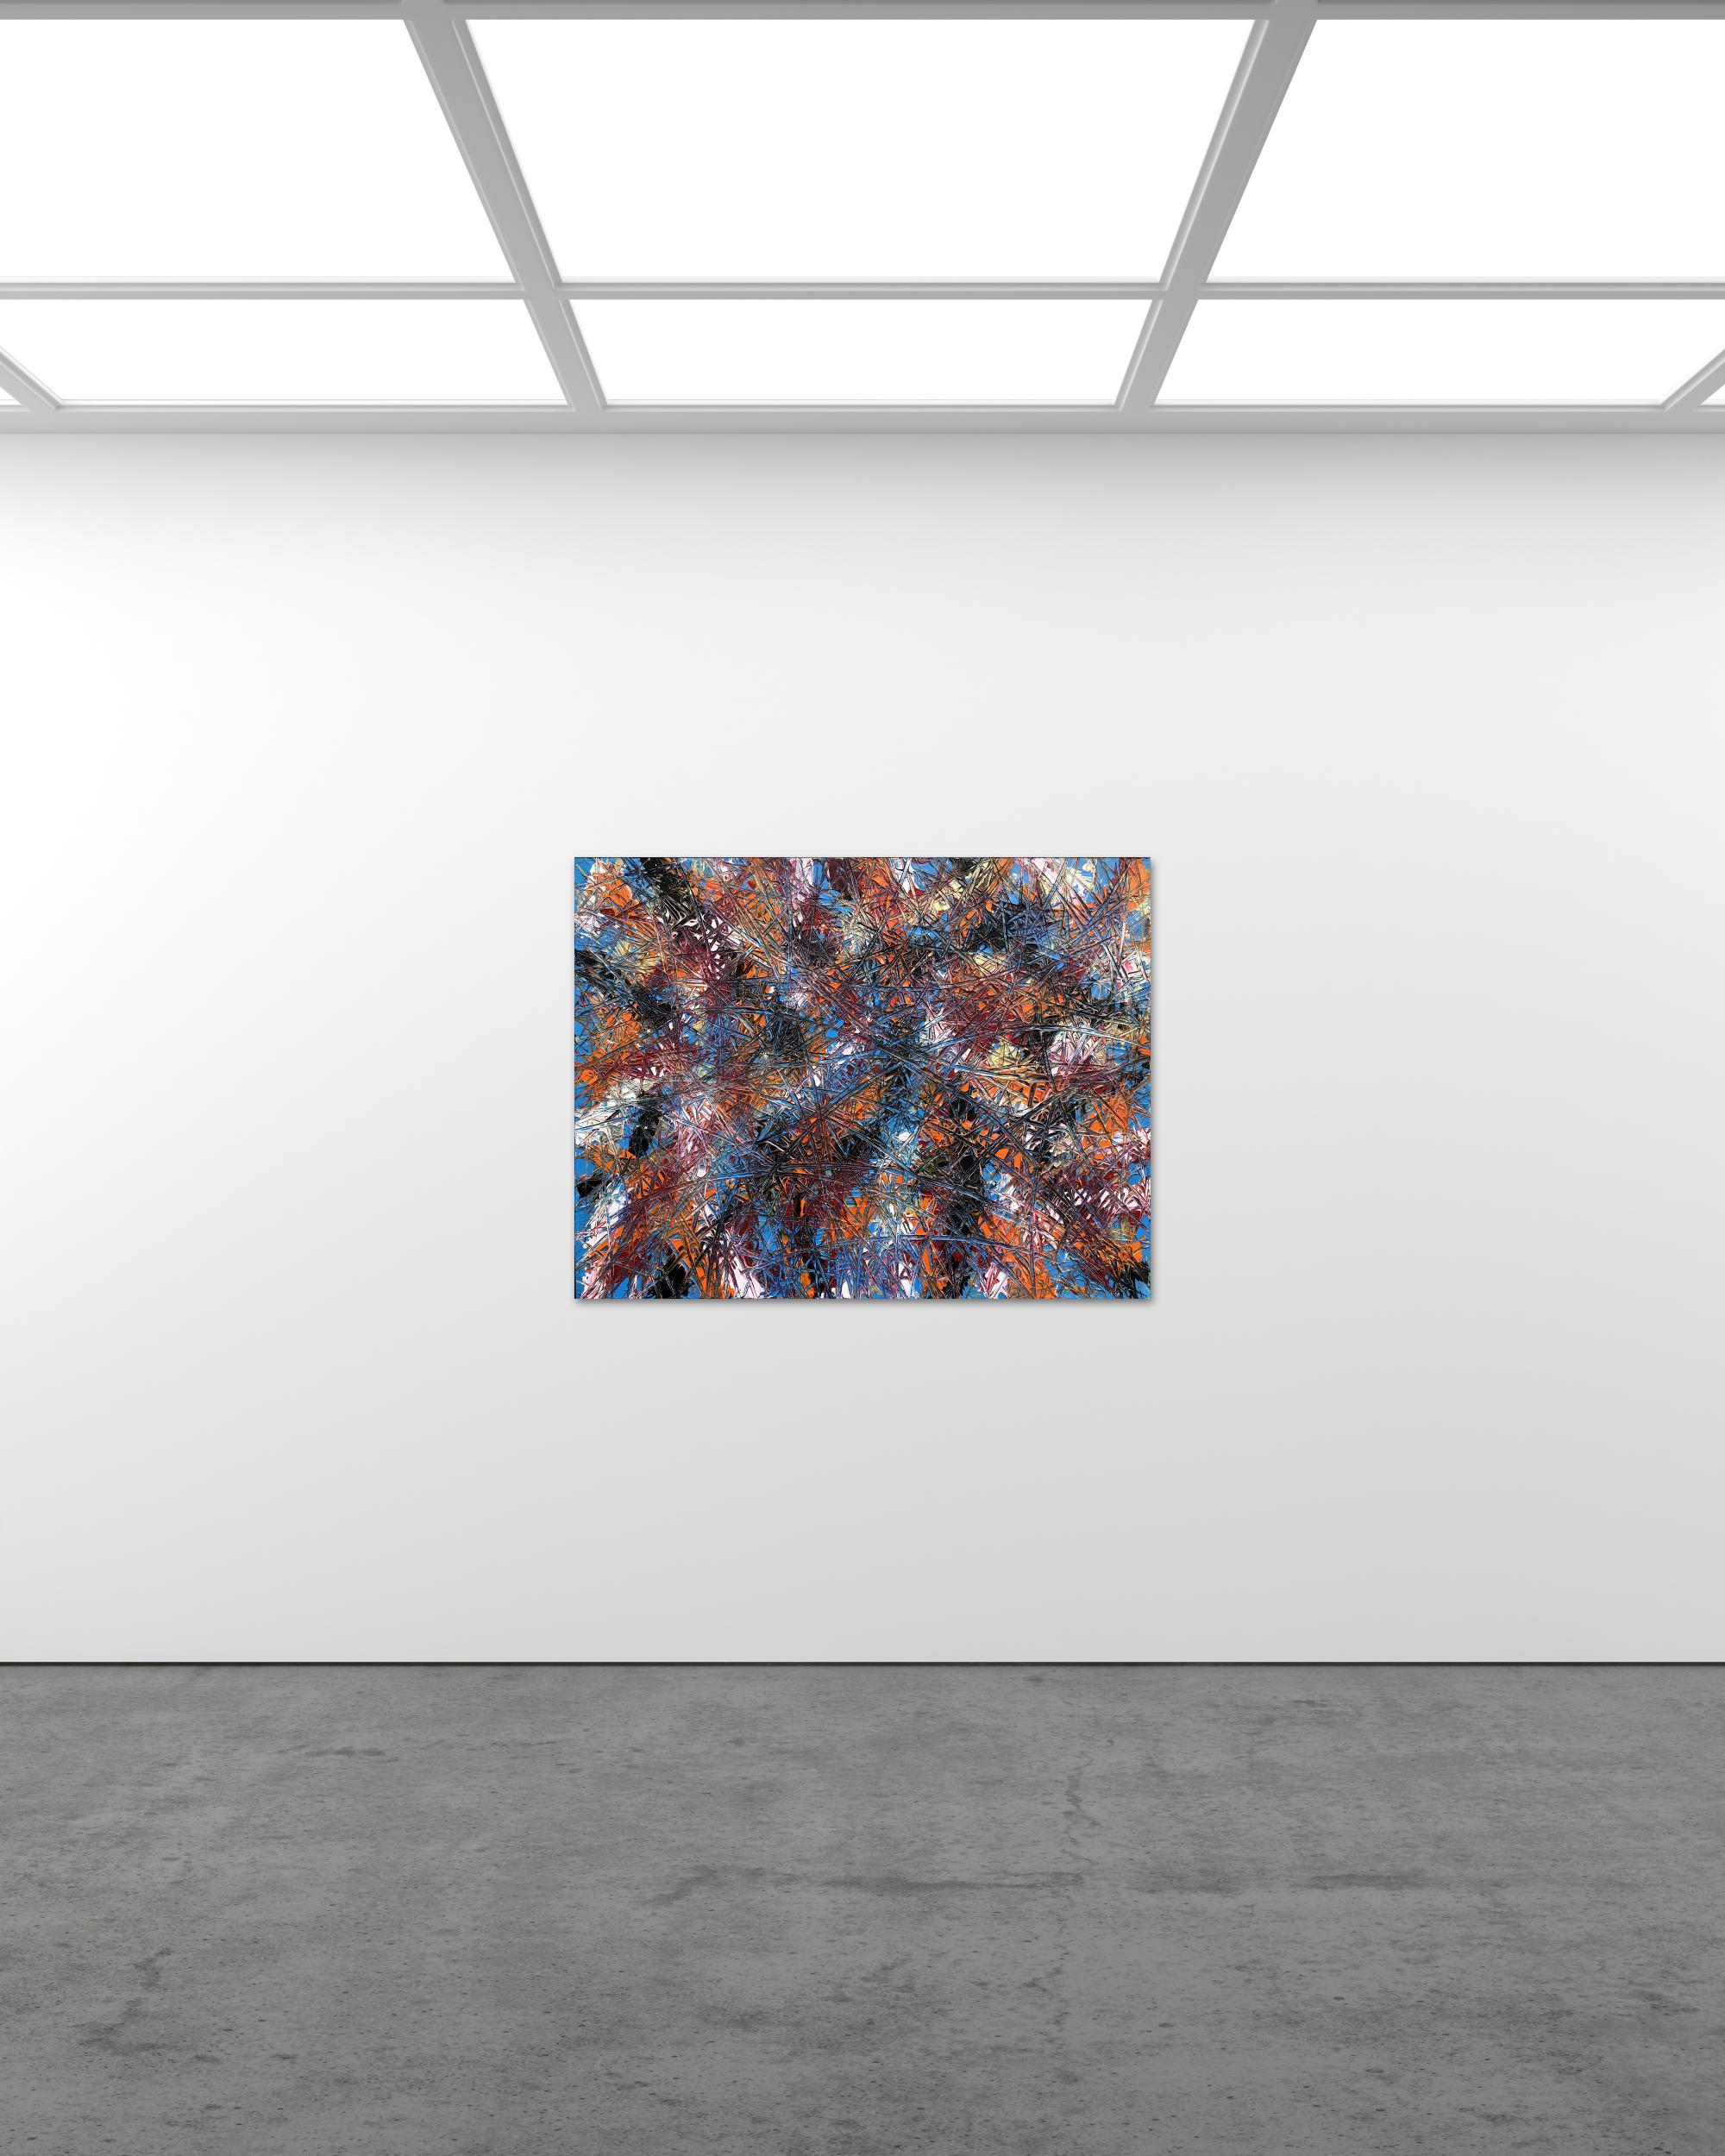 Titre - So I've Been Told.

Peinture acrylique d'expressionnisme abstrait par Troy Smith dans des couleurs riches et vibrantes de bleu ciel, orange, noir et blanc. Pleine de mouvement et d'expression, la peinture établit un équilibre entre la